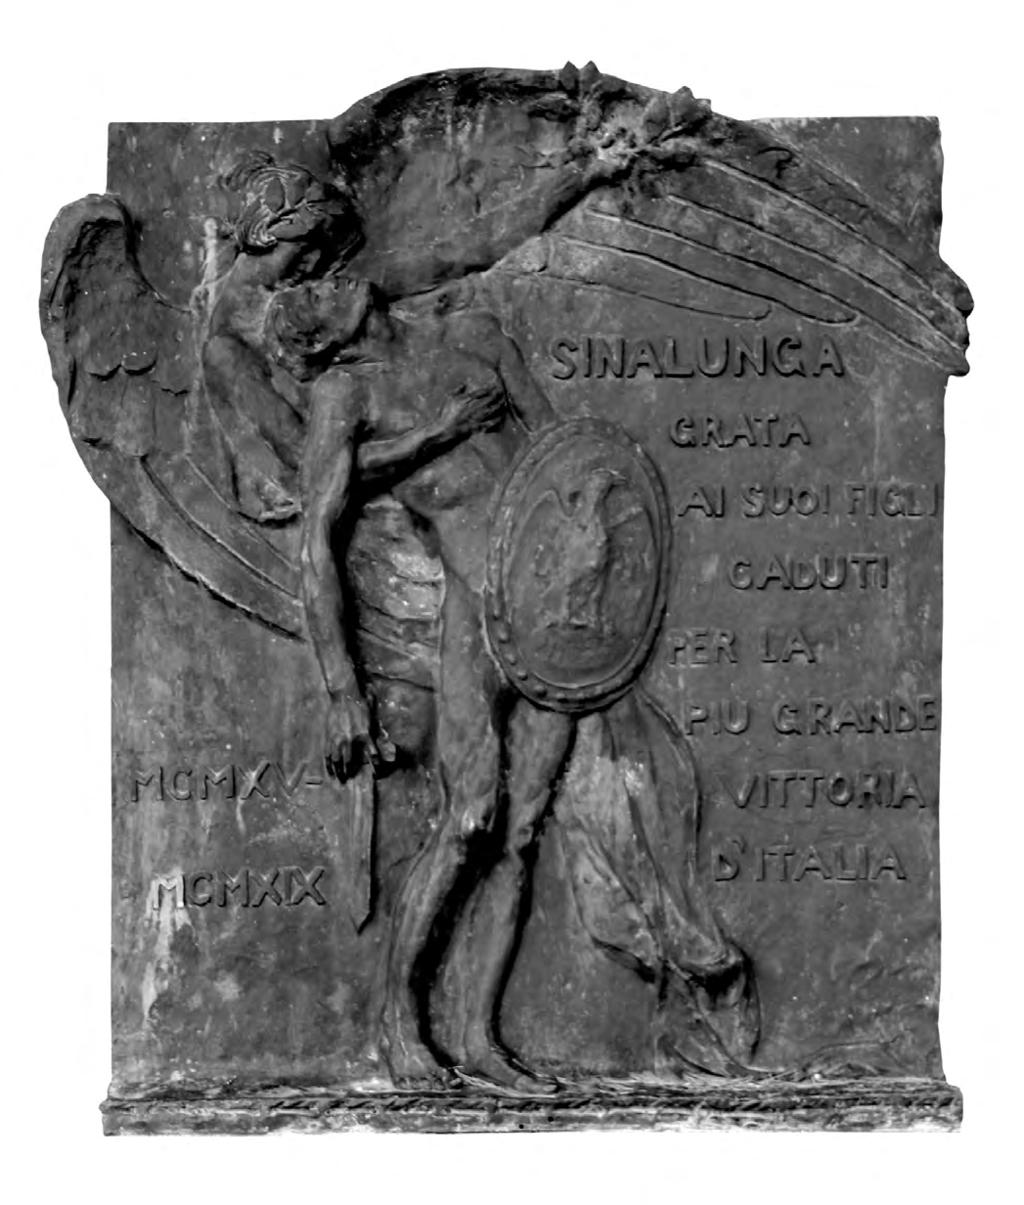 108 SINALUNGA RICORDA Il monumento è caratterizzato da un altorilievo in bronzo chiaramente di recupero, giacché la fattura lo colloca con chiarezza tra le due guerre, sia per il testo, che per gli